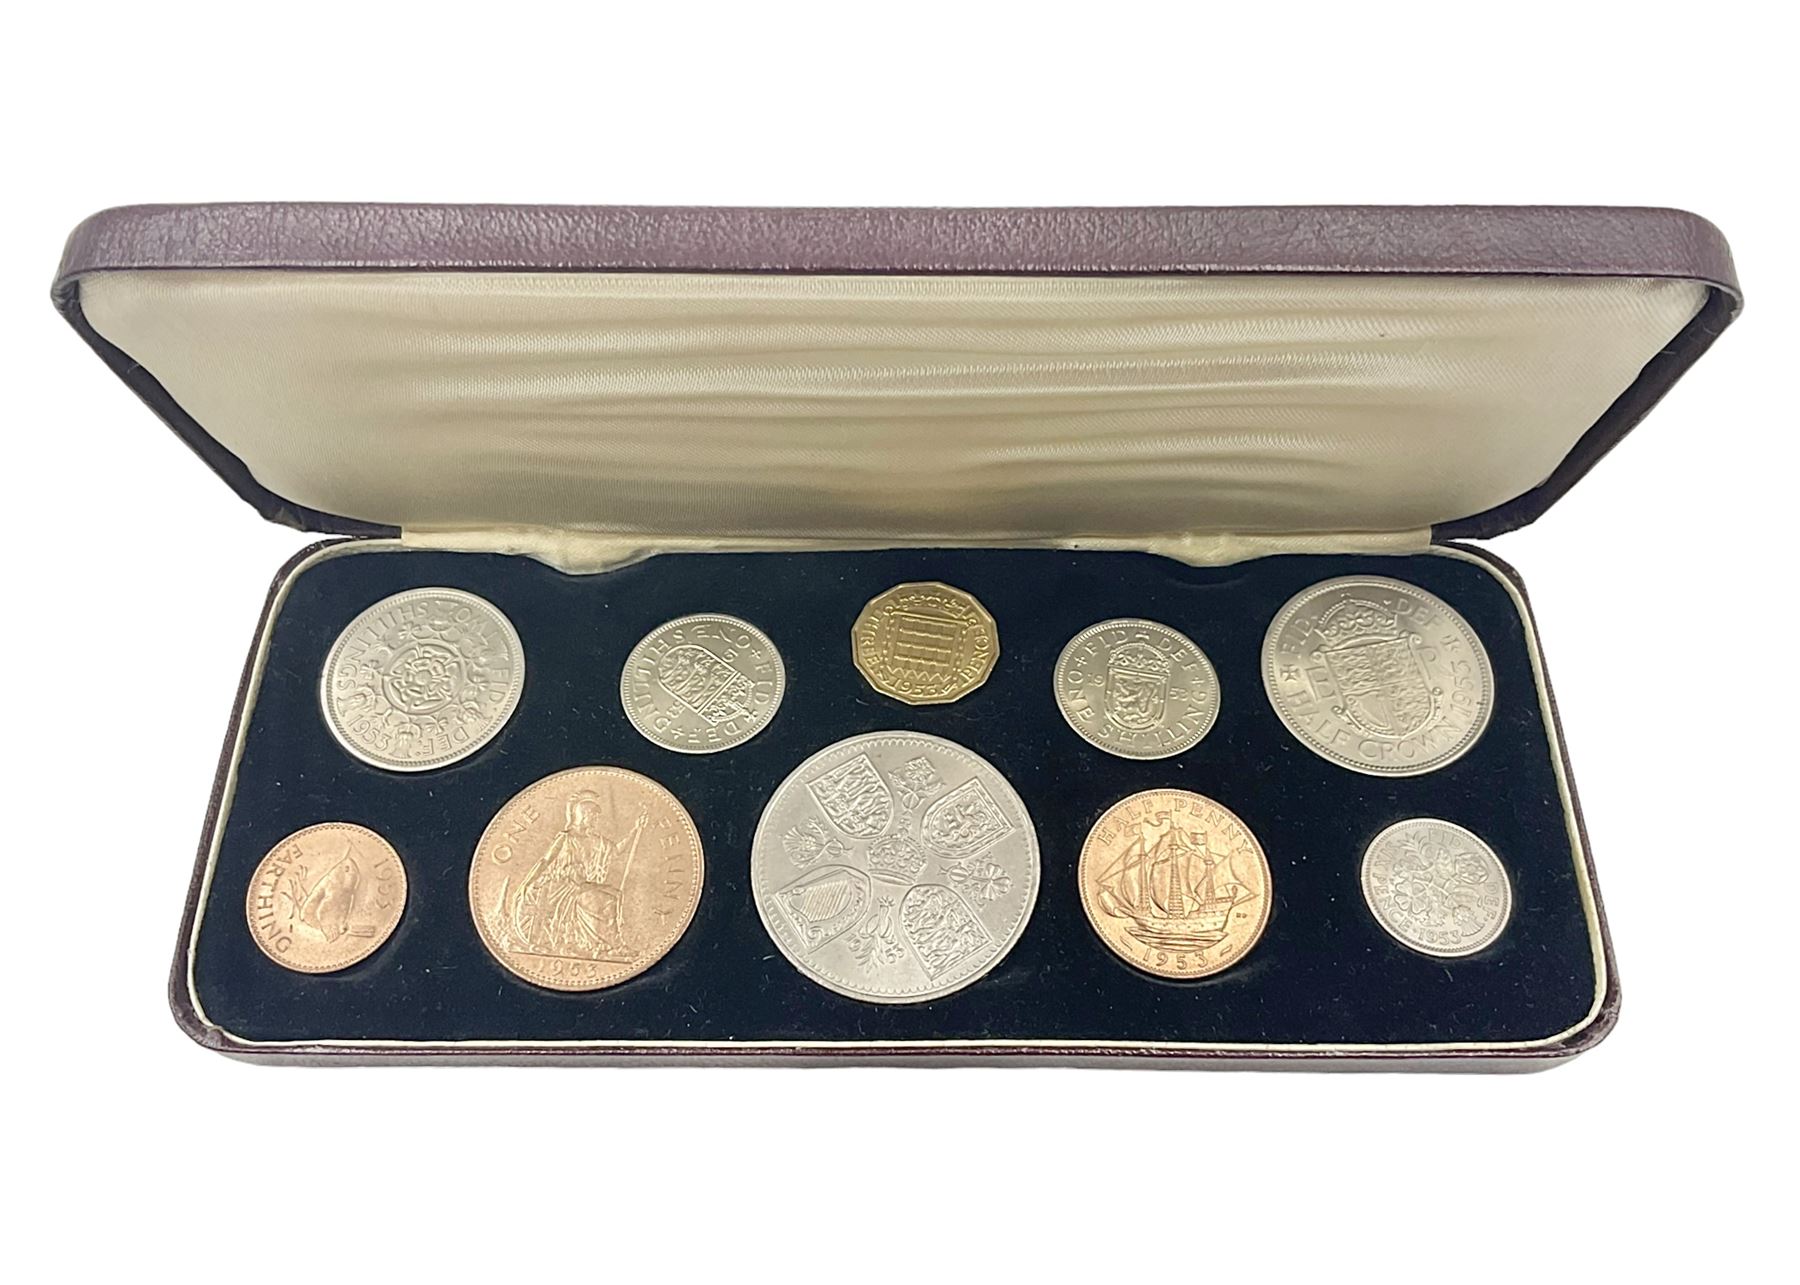 Queen Elizabeth II 1953 ten coin specimen set